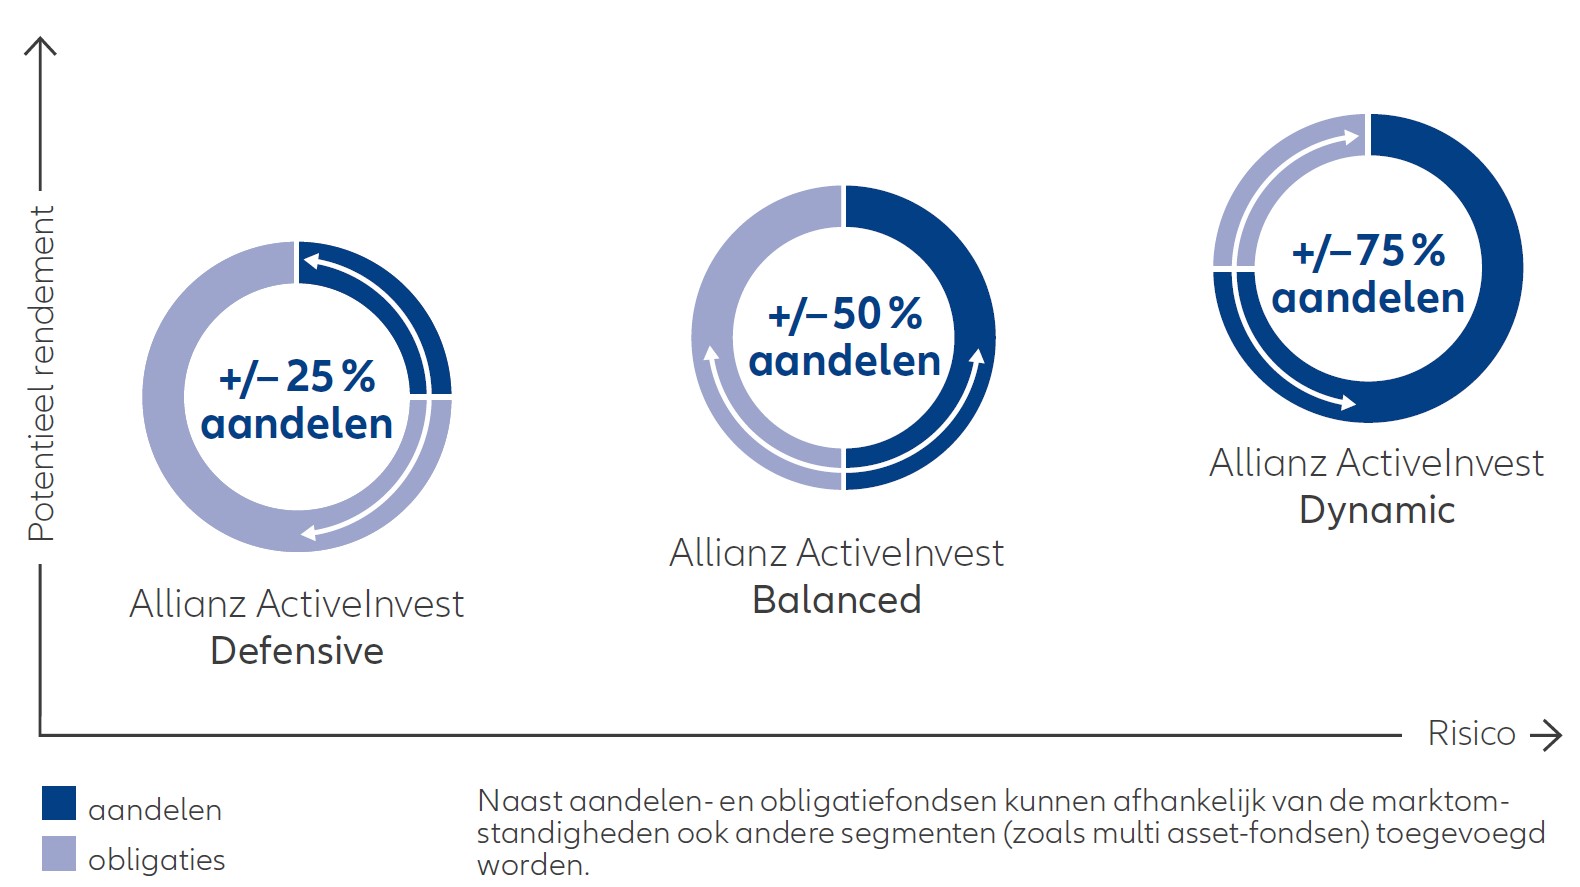 Overzicht van de mogelijkheden binnen de fondsen van Allianz ActiveInvest